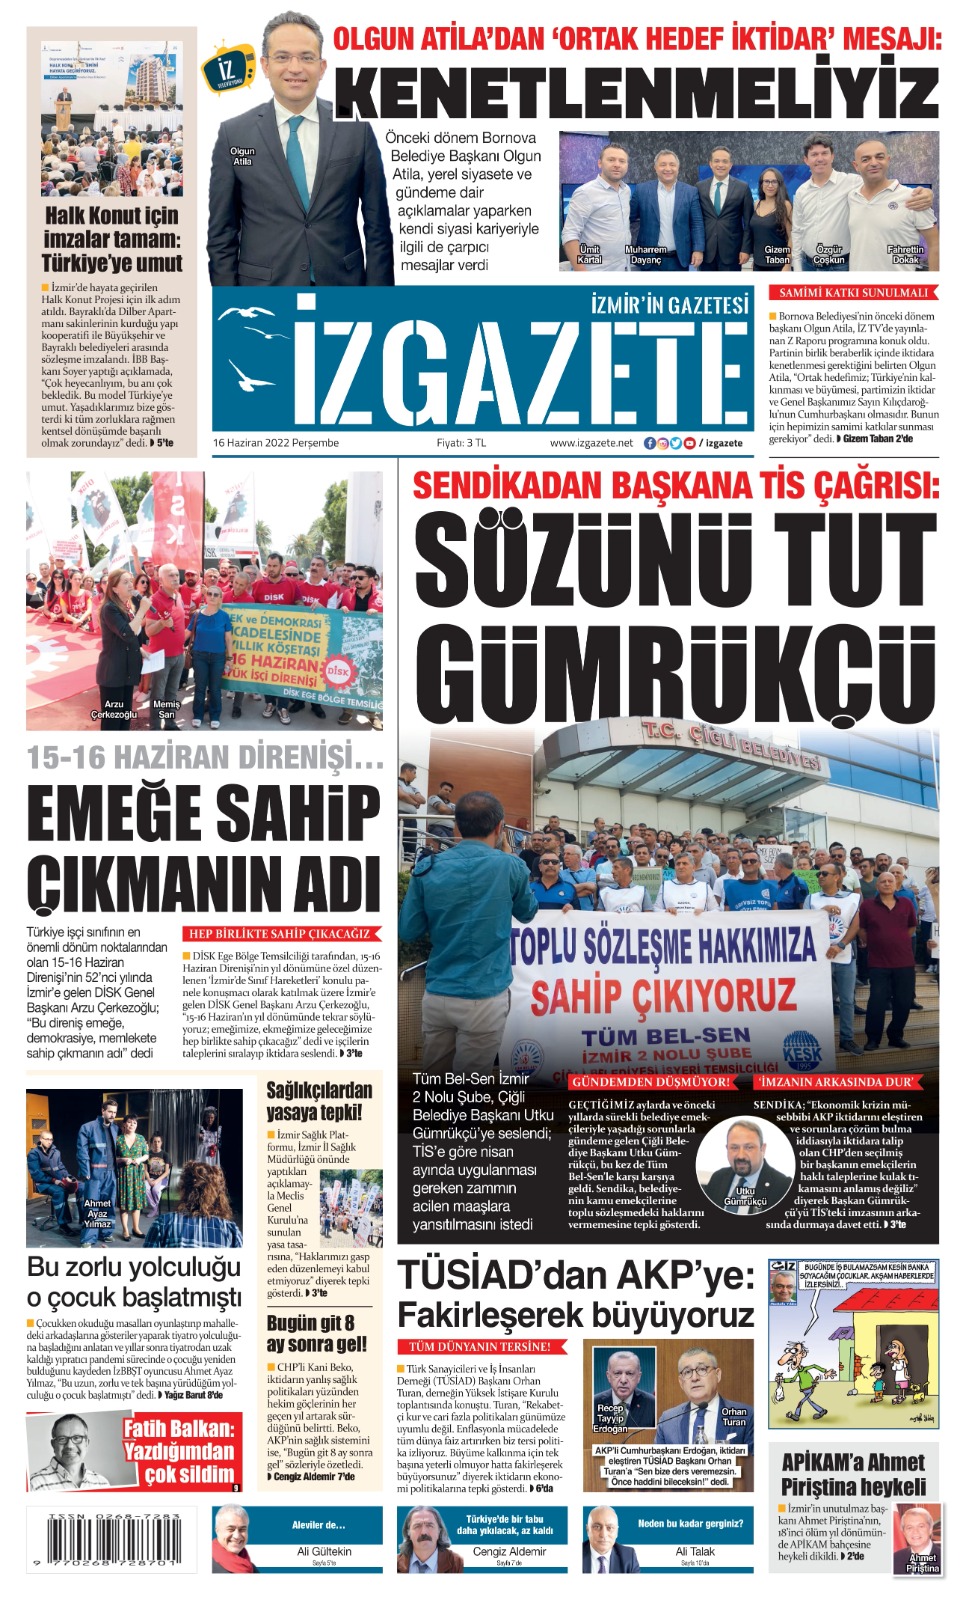 İz Gazete - İzmir'in Gazetesi - 16.06.2022 Manşeti